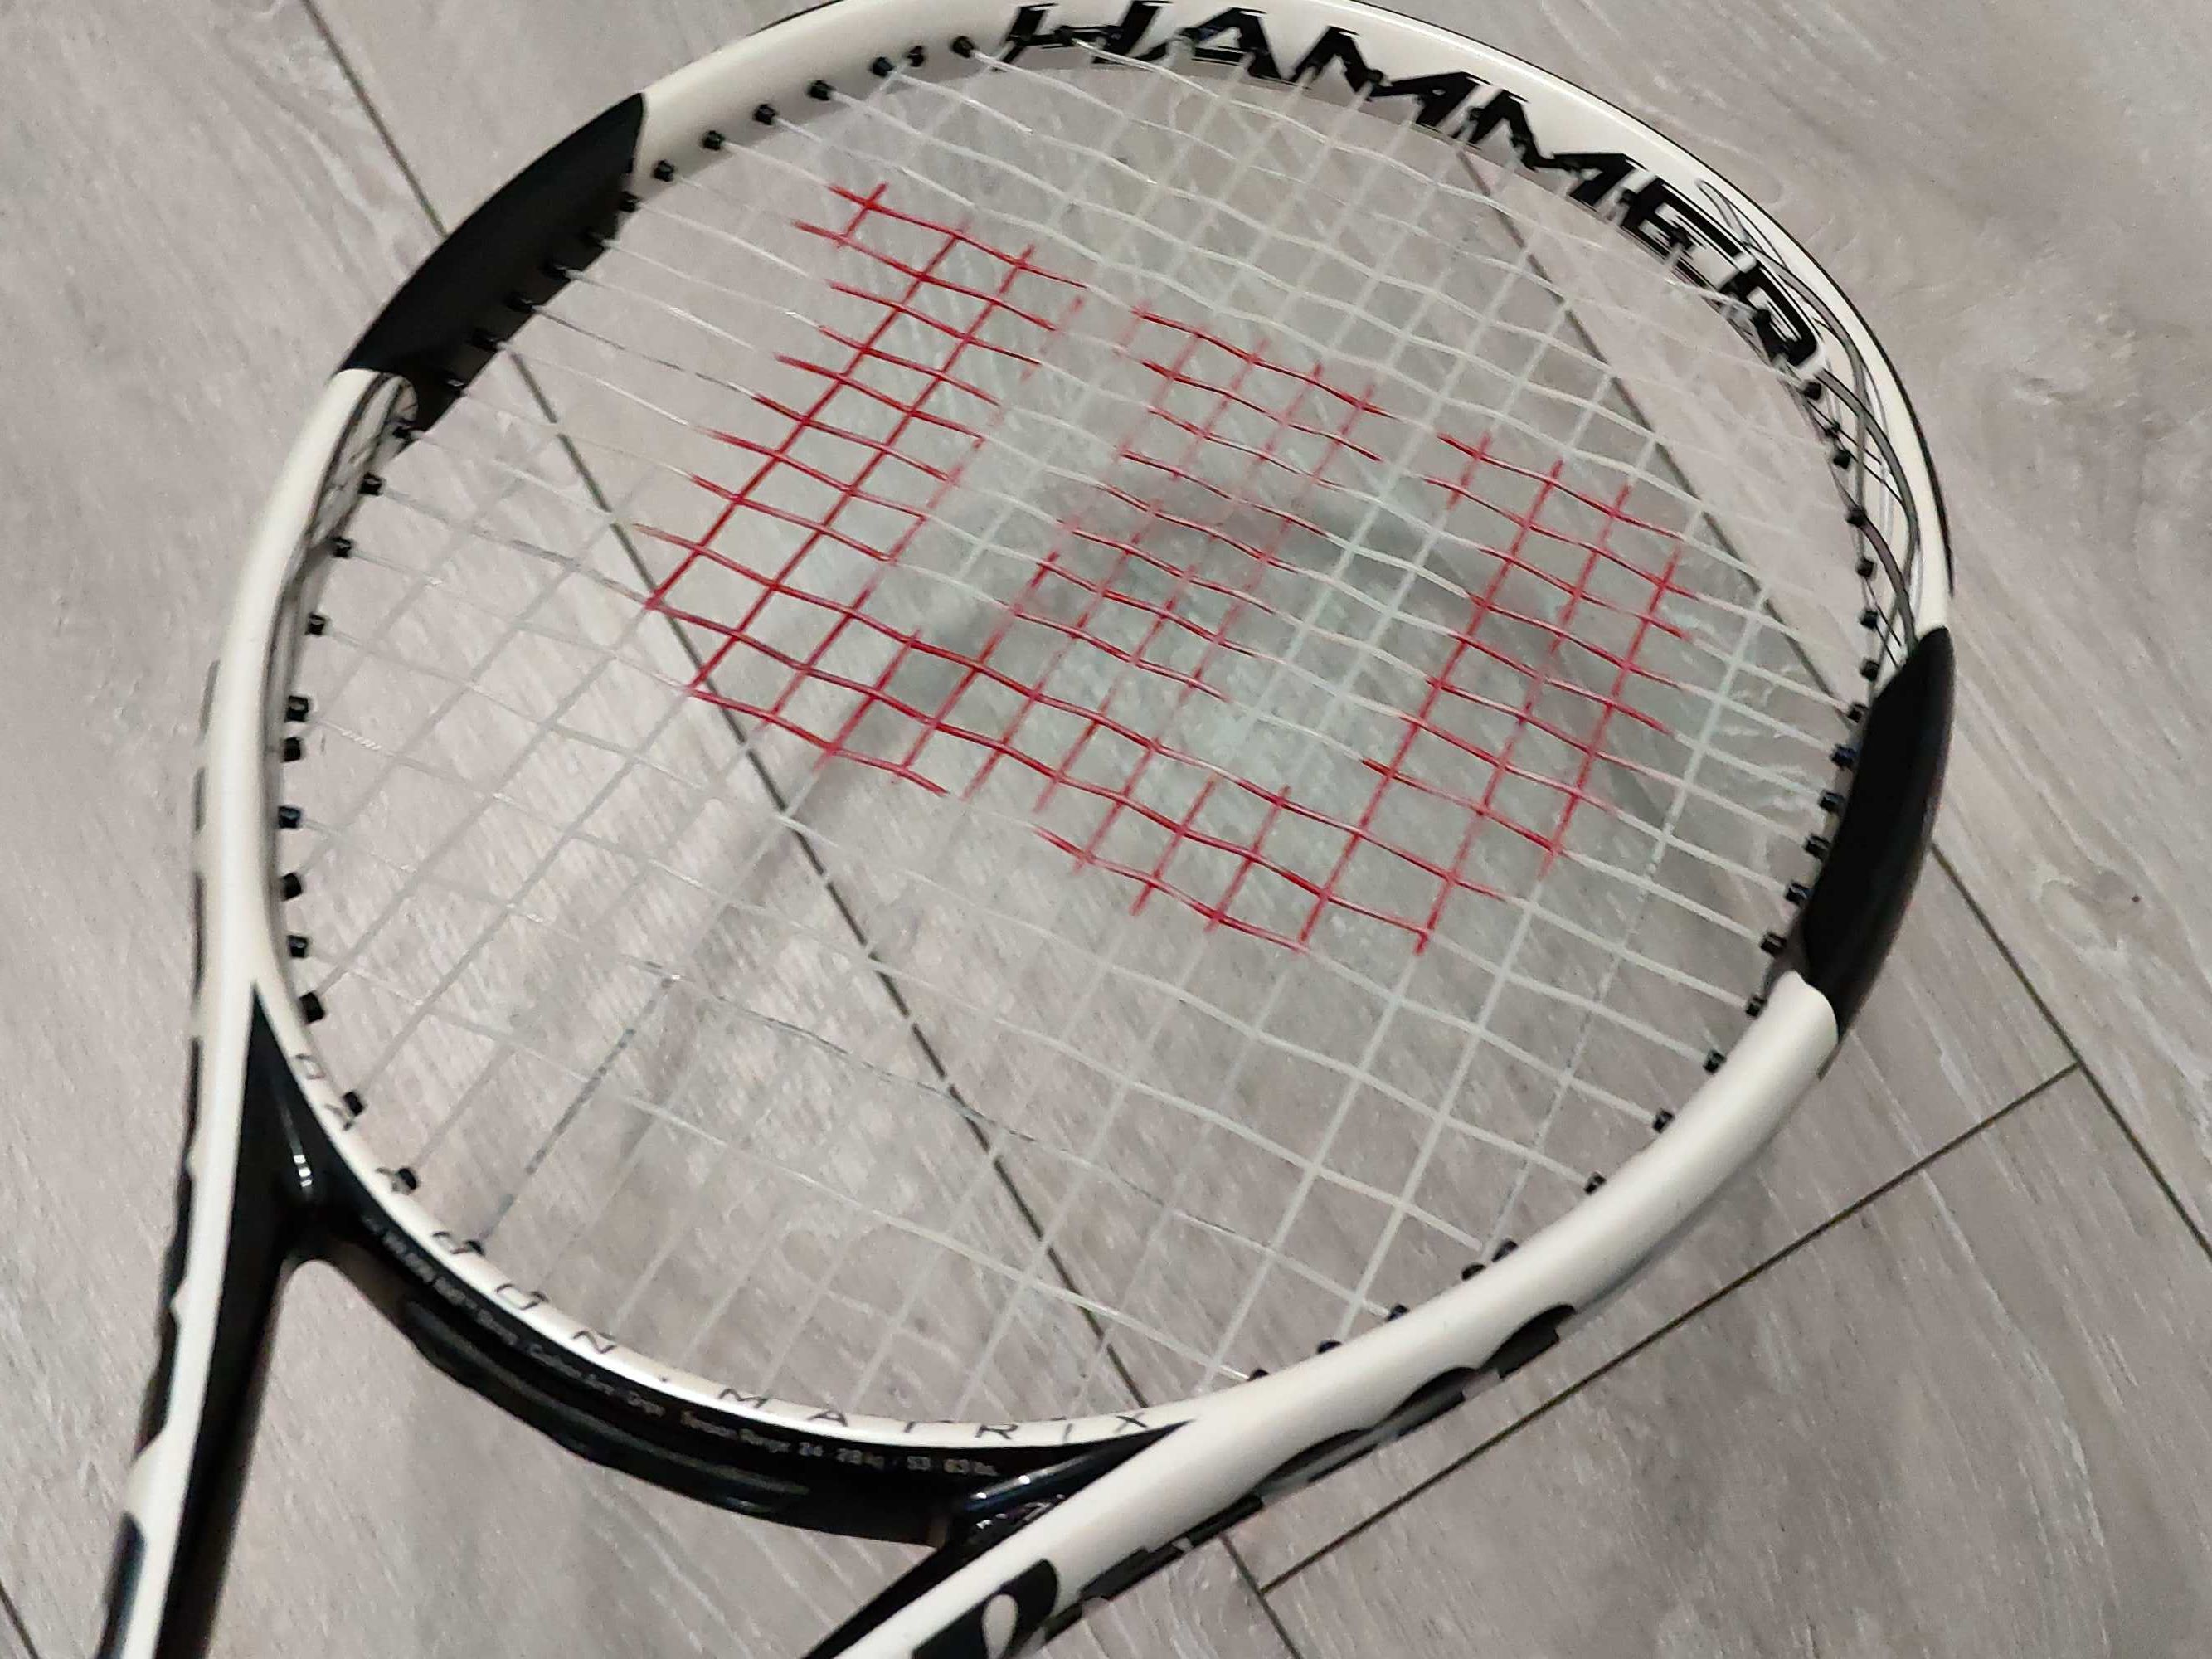 Rakieta Tenisowa Wilson Hammer 6 Carbon Matrix rakieta do tenisa